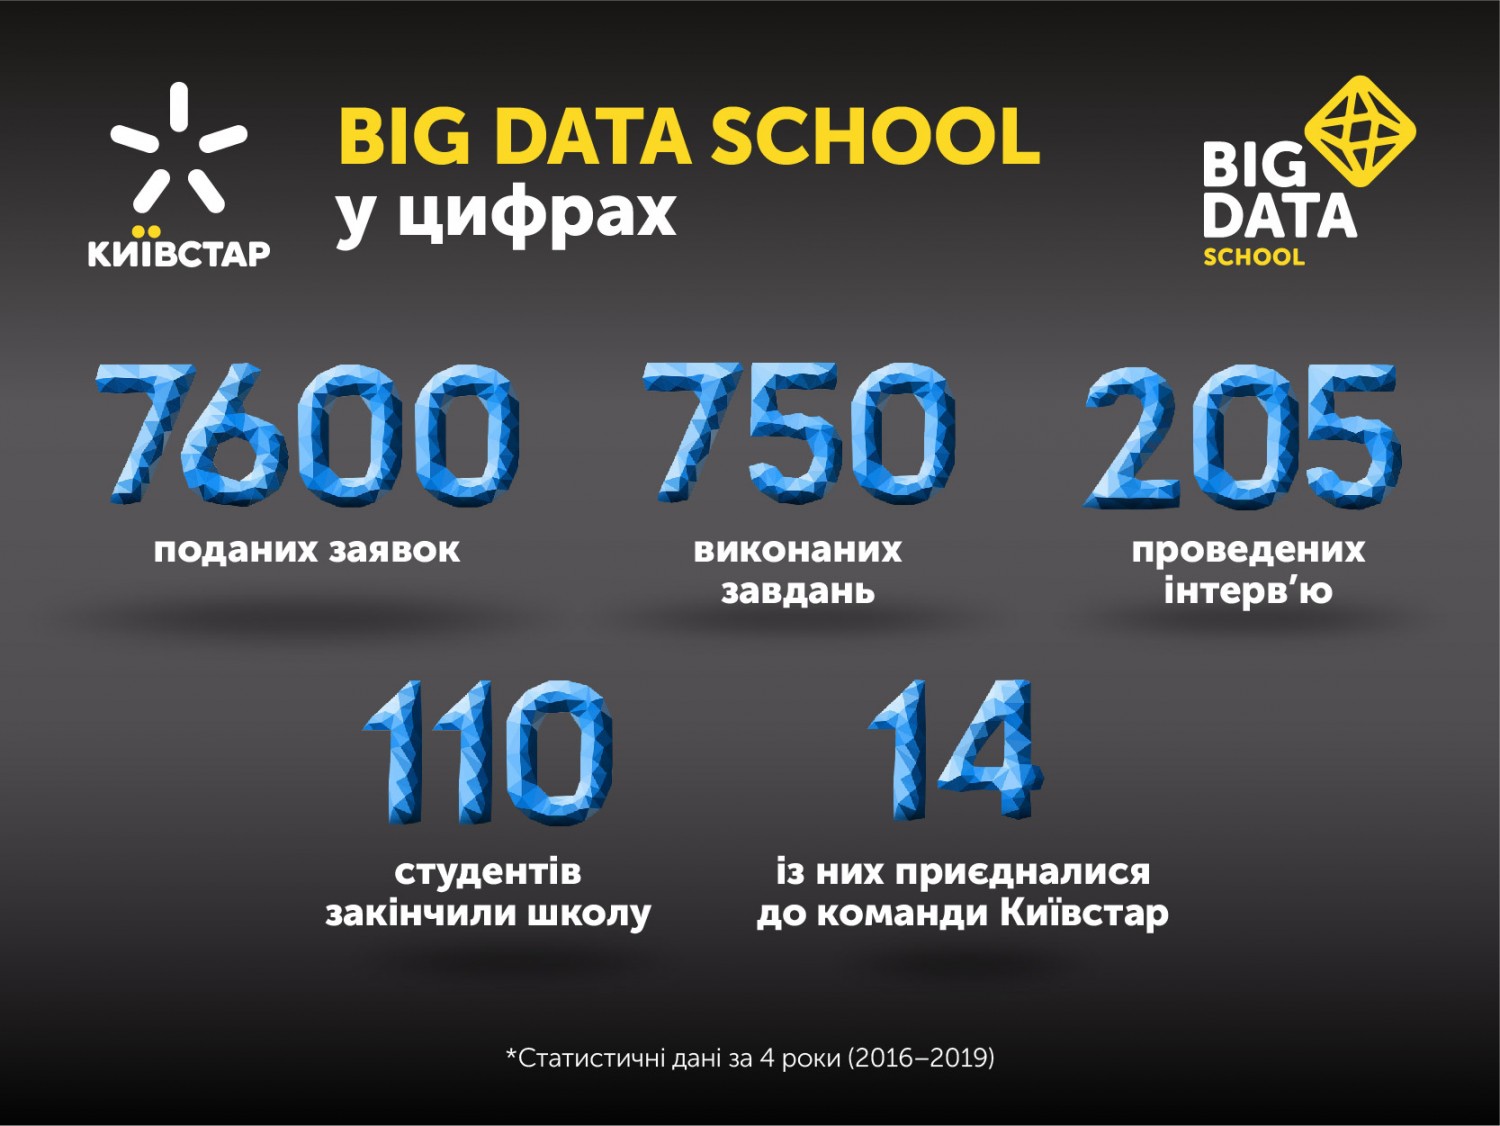 Big Data School 5.0: вісім досвідчених менторів навчатимуть працювати з аналізом великих даних та хмарними інструментами